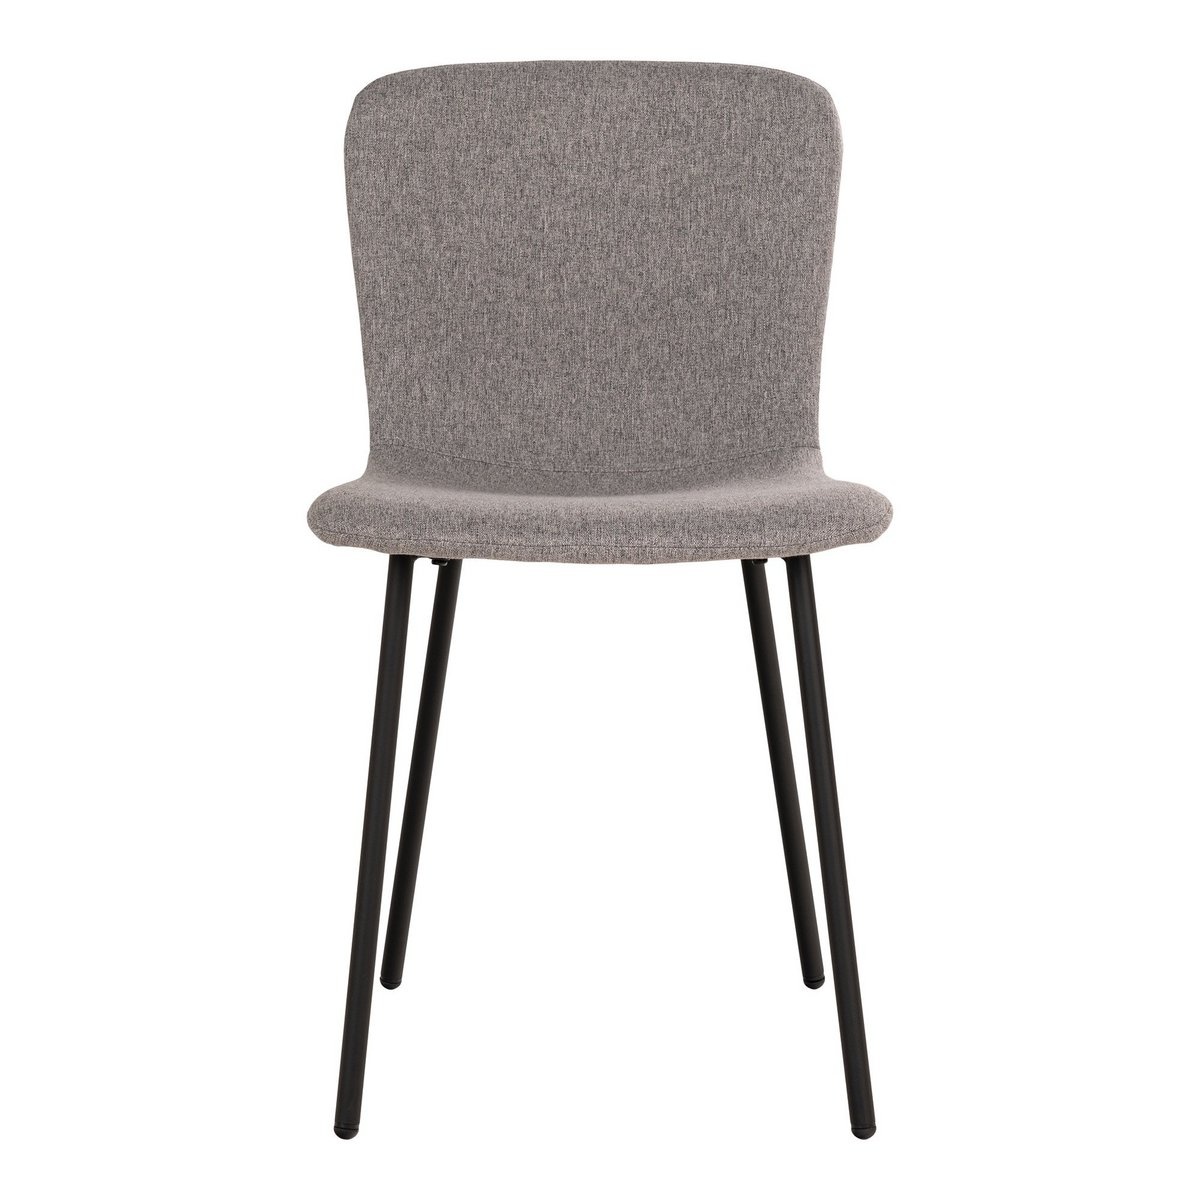 KantoormeubelenPlus Halden Dining Chair - Eetkamerstoel, lichtgrijs met zwarte poten